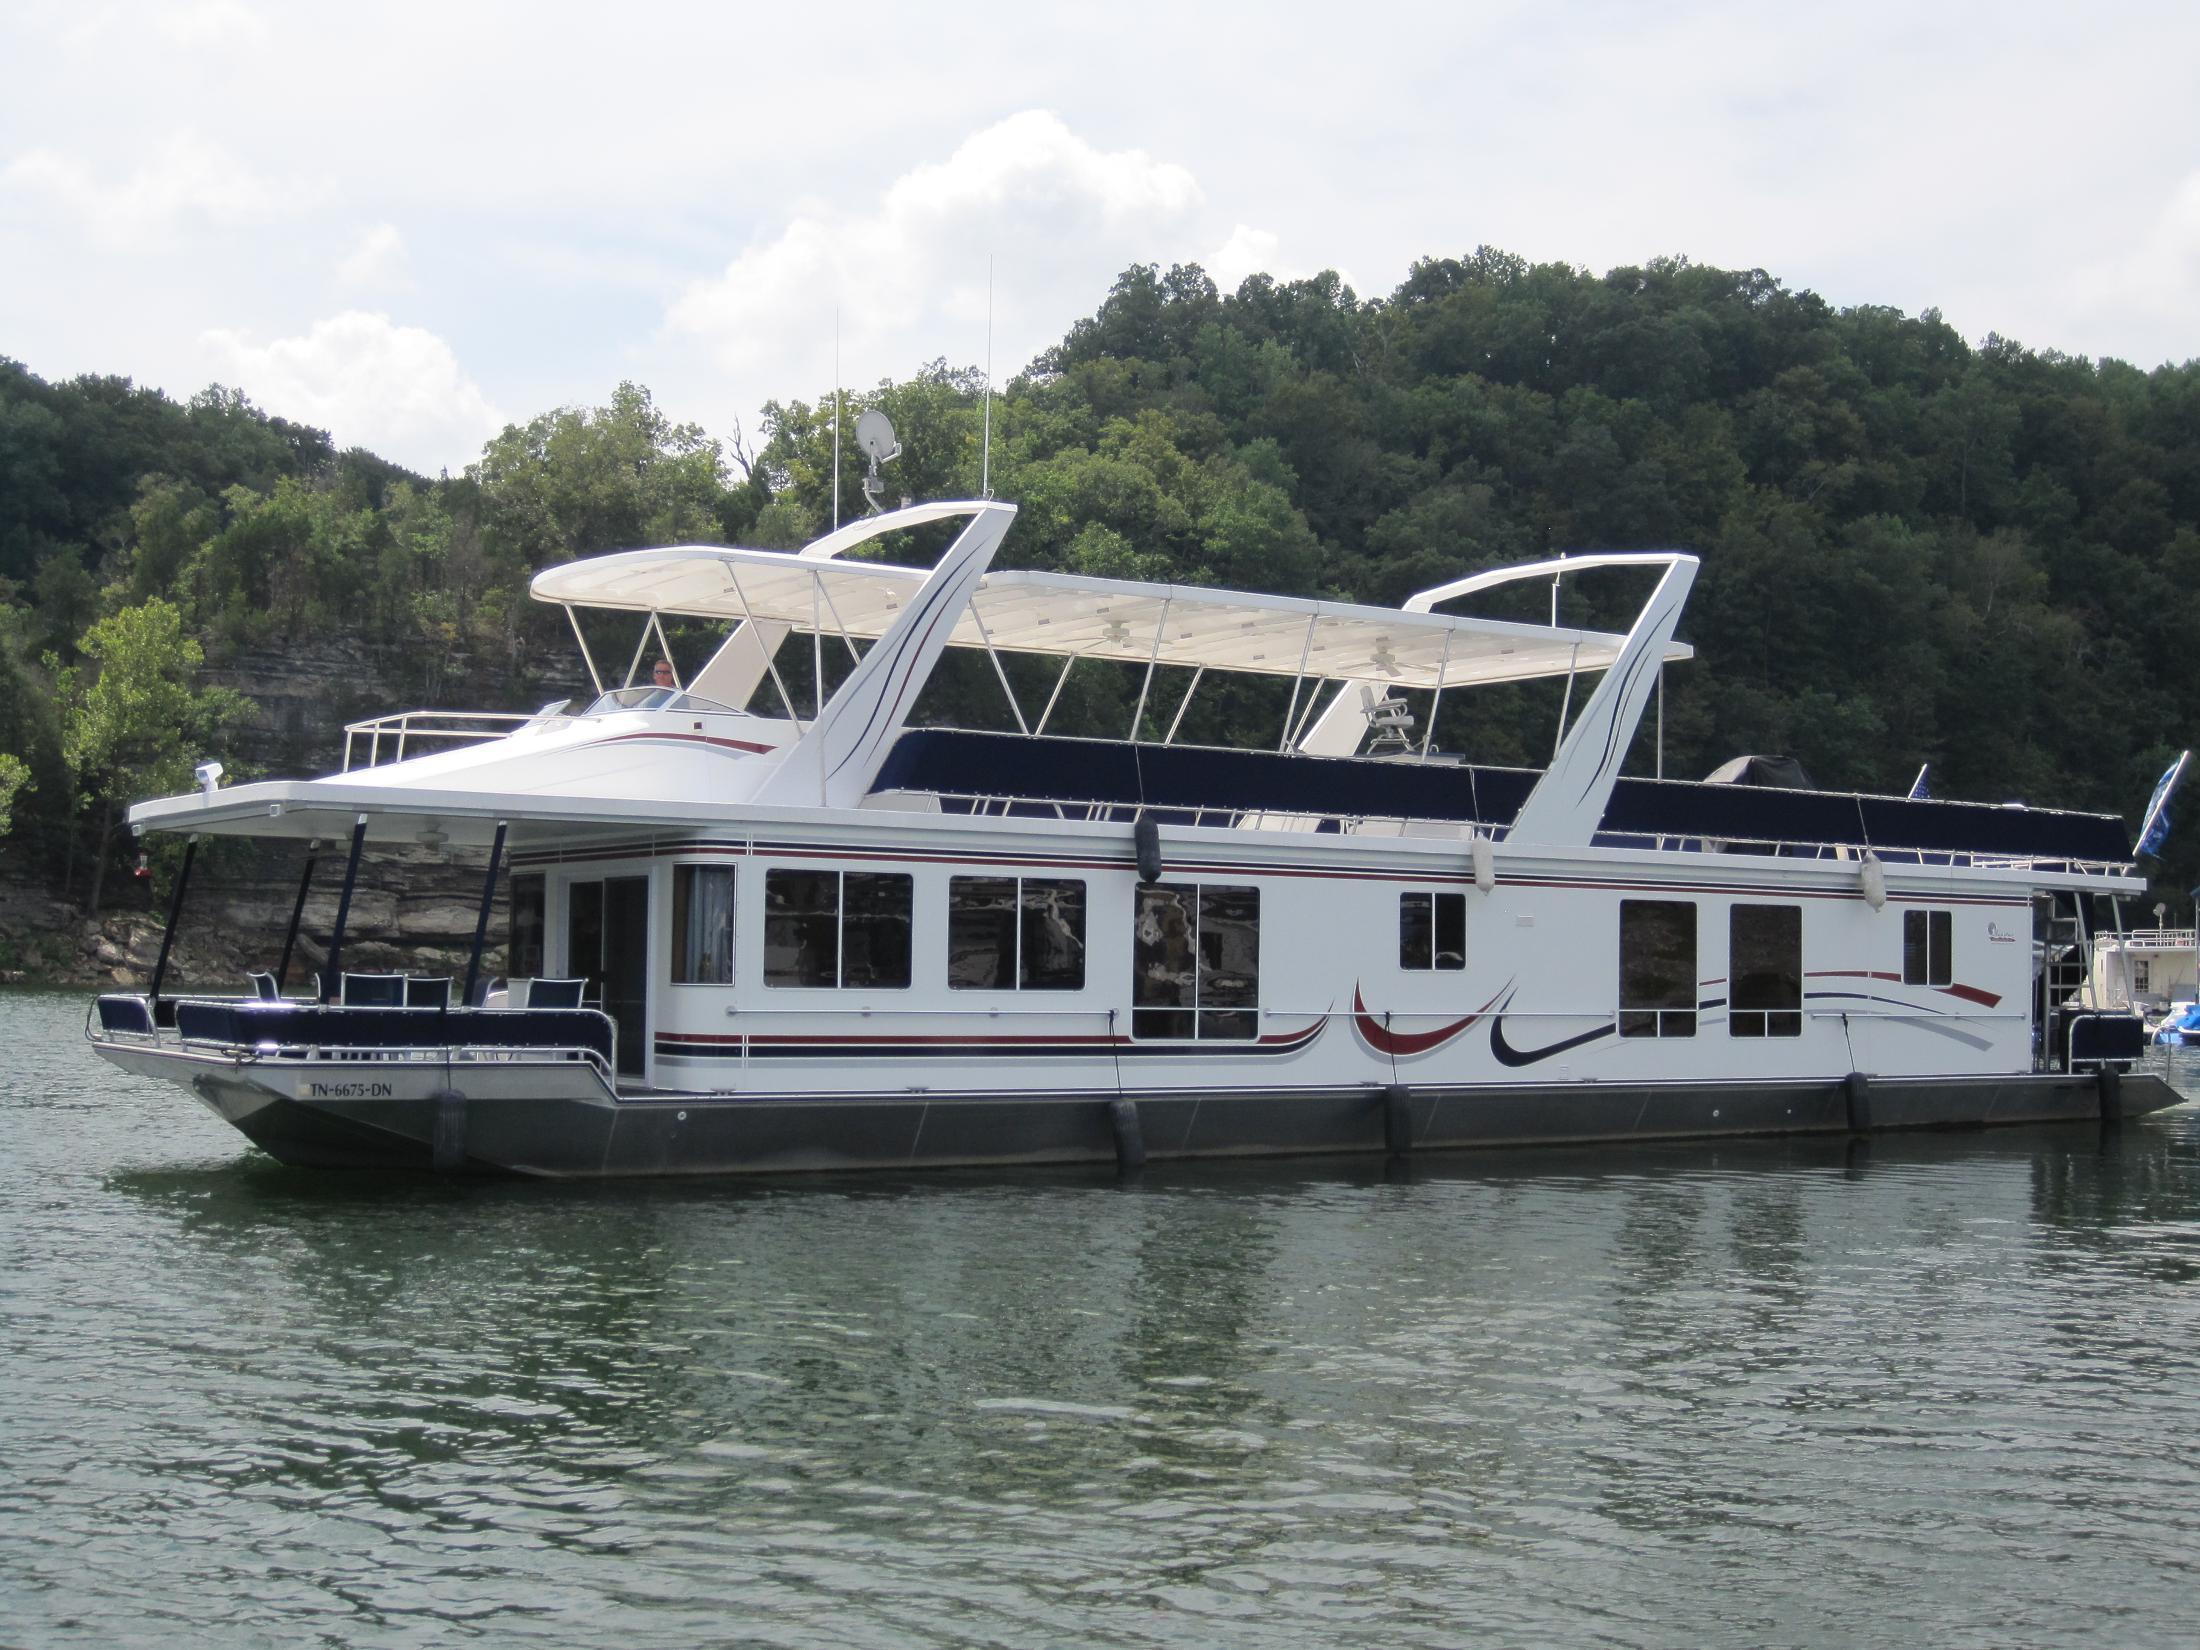 17'x85' Sunstar Houseboat, Smithville